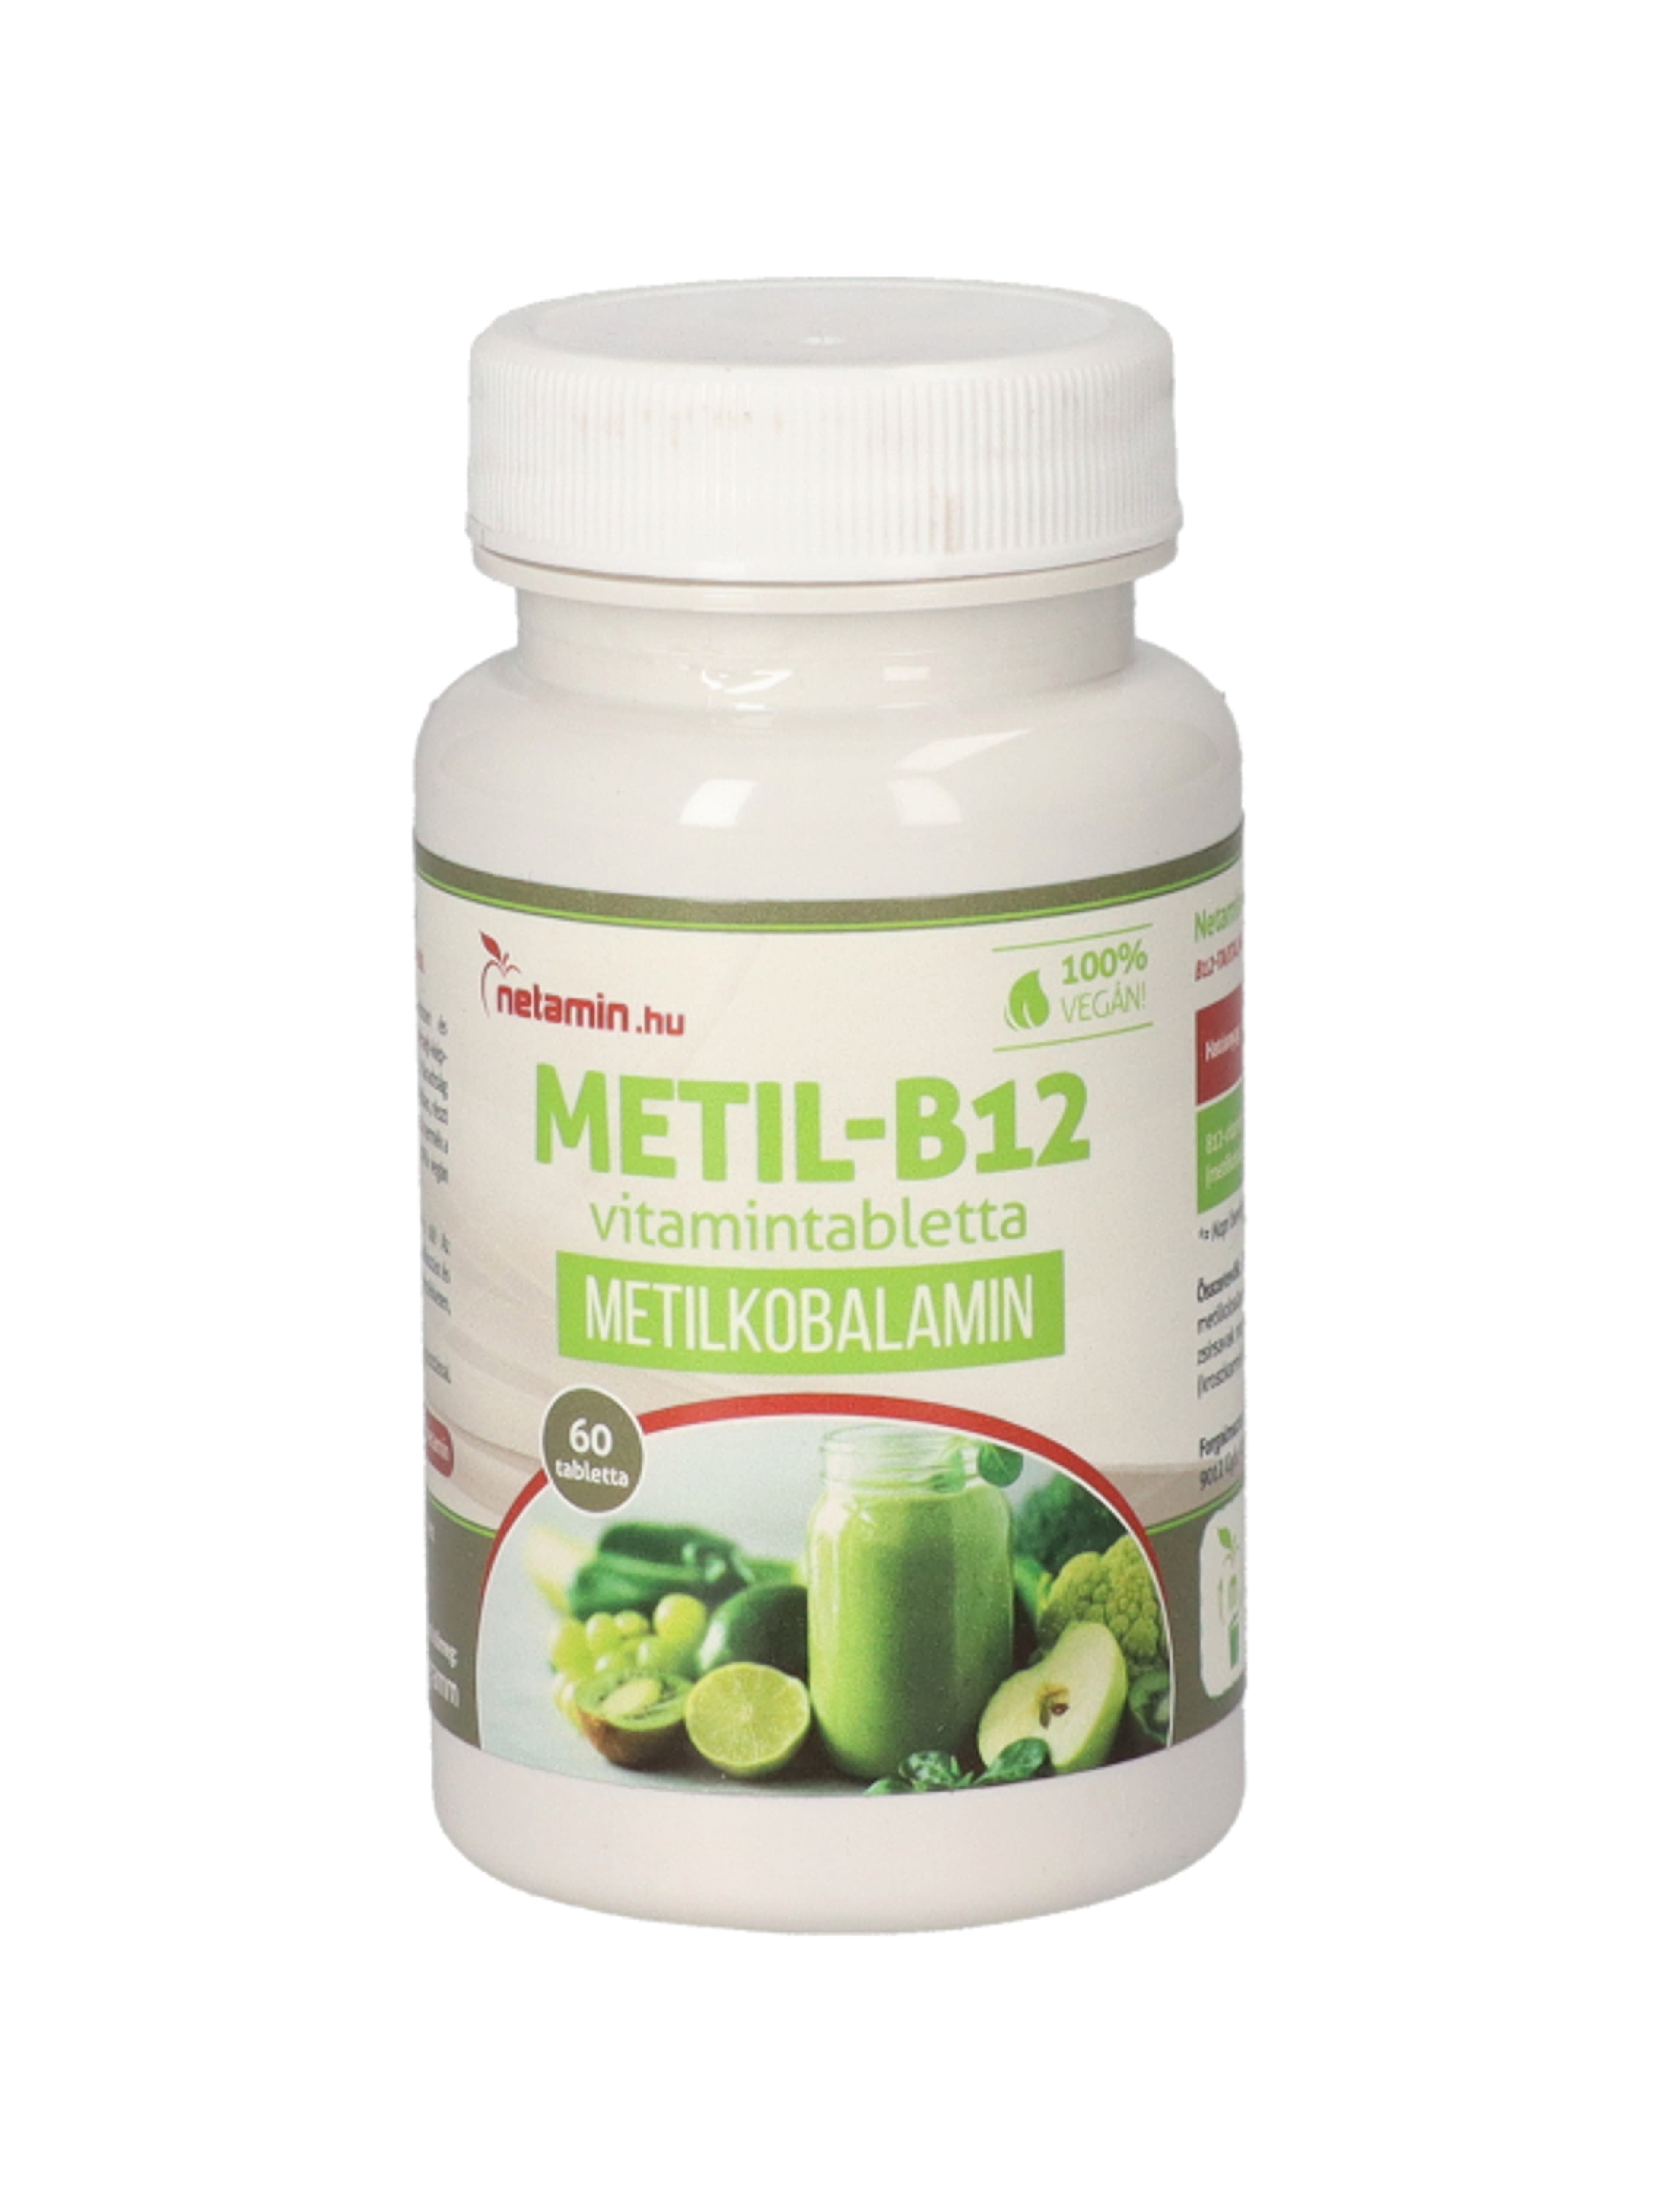 Netamin Metil-B12- vitamin tabletta - 60 db-1